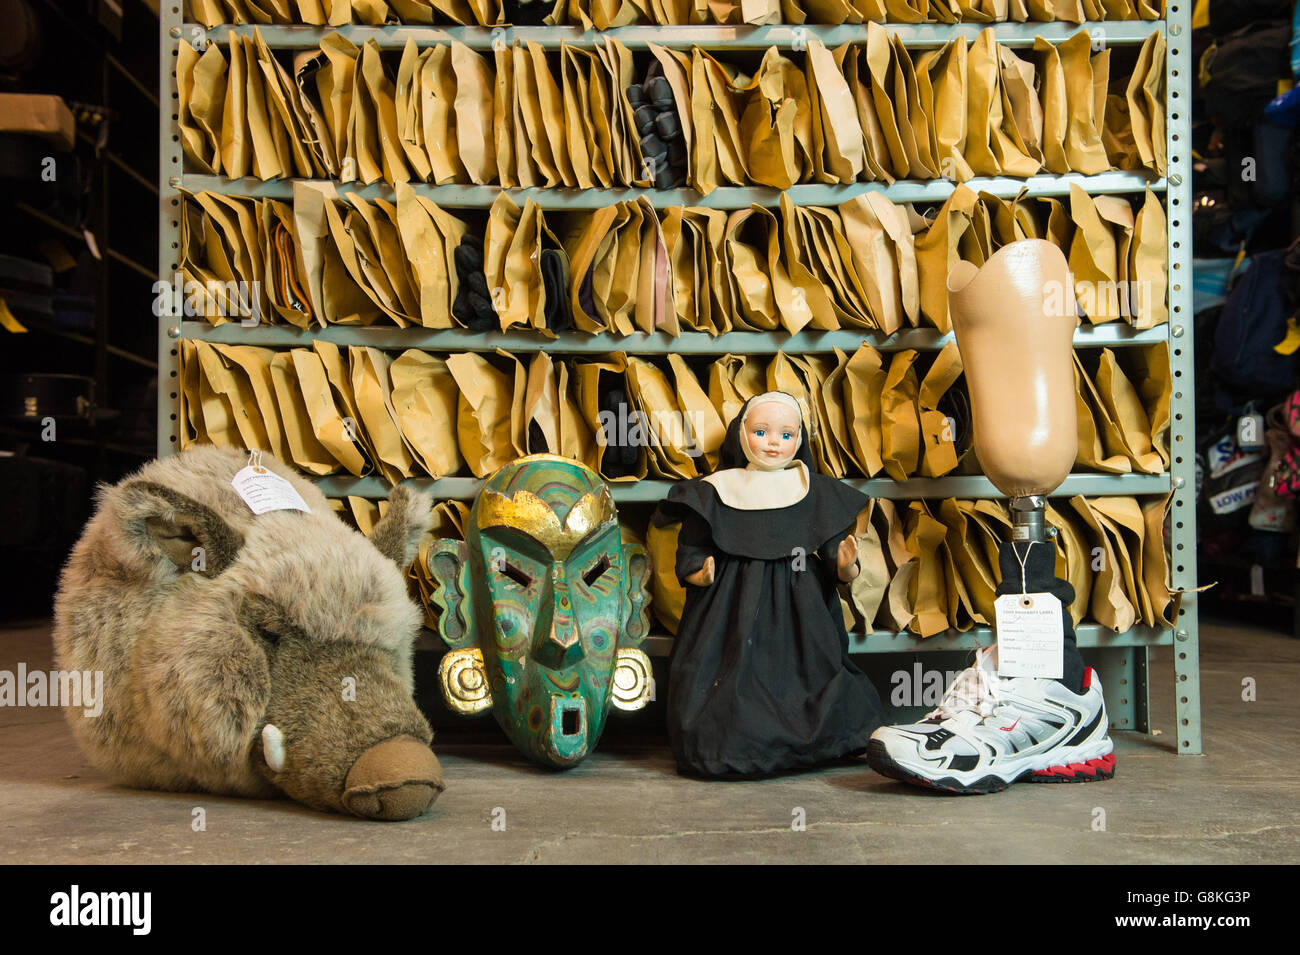 (Da sinistra a destra) una testa di un cinghiale giocattolo morbido, una maschera di legno intagliata, una bambola di monaca e una gamba protesica sono tra gli oggetti del Transport for London Lost Property Office, nel centro di Londra, che smista e memorizza gli oggetti lasciati sul sistema di trasporto pubblico di Londra. Foto Stock